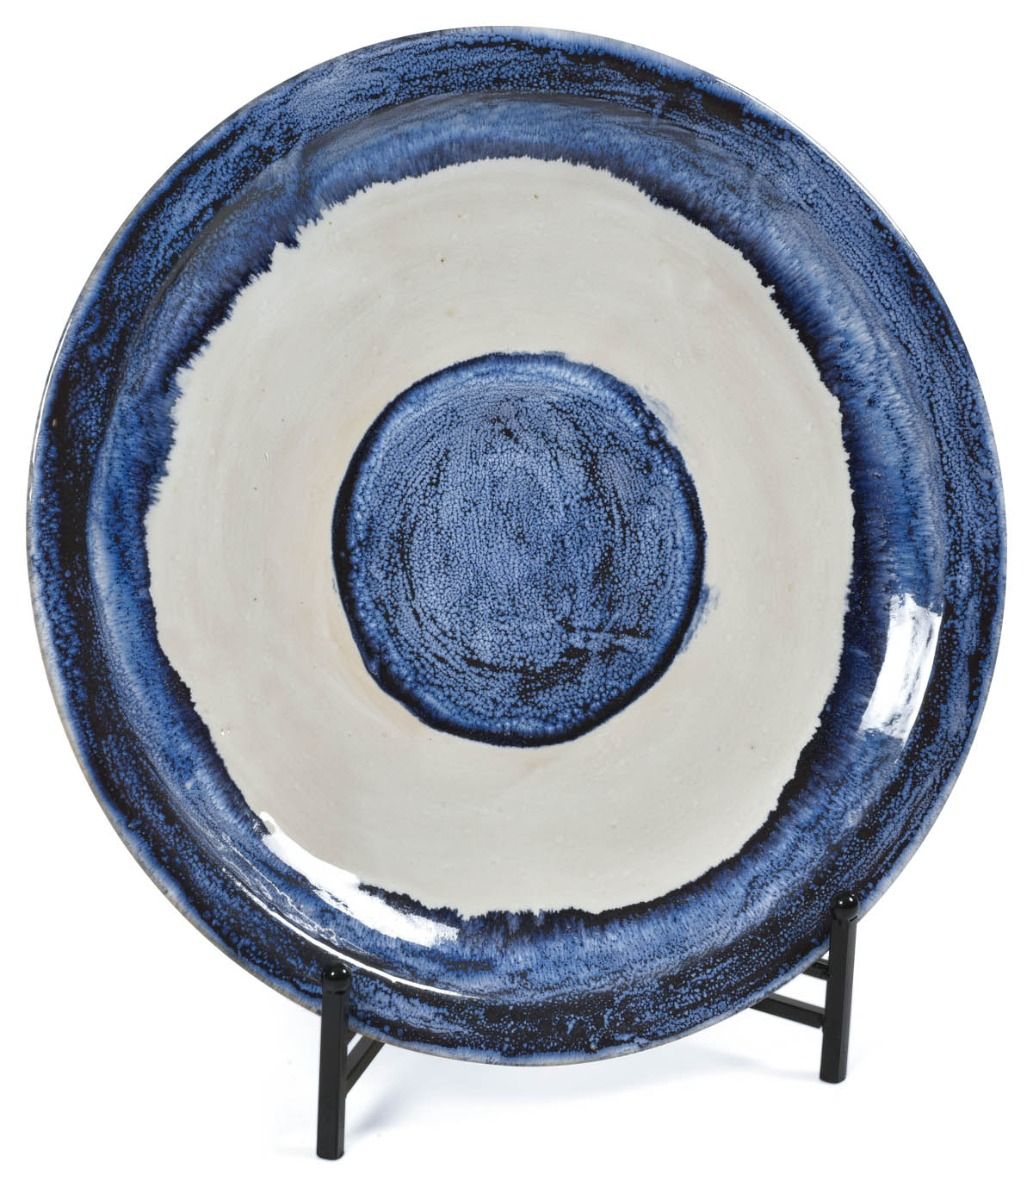 Mediterranean Ceramic Glazed Plate - Blue/White-Dining & Entertaining-H&G Living-The Bay Room